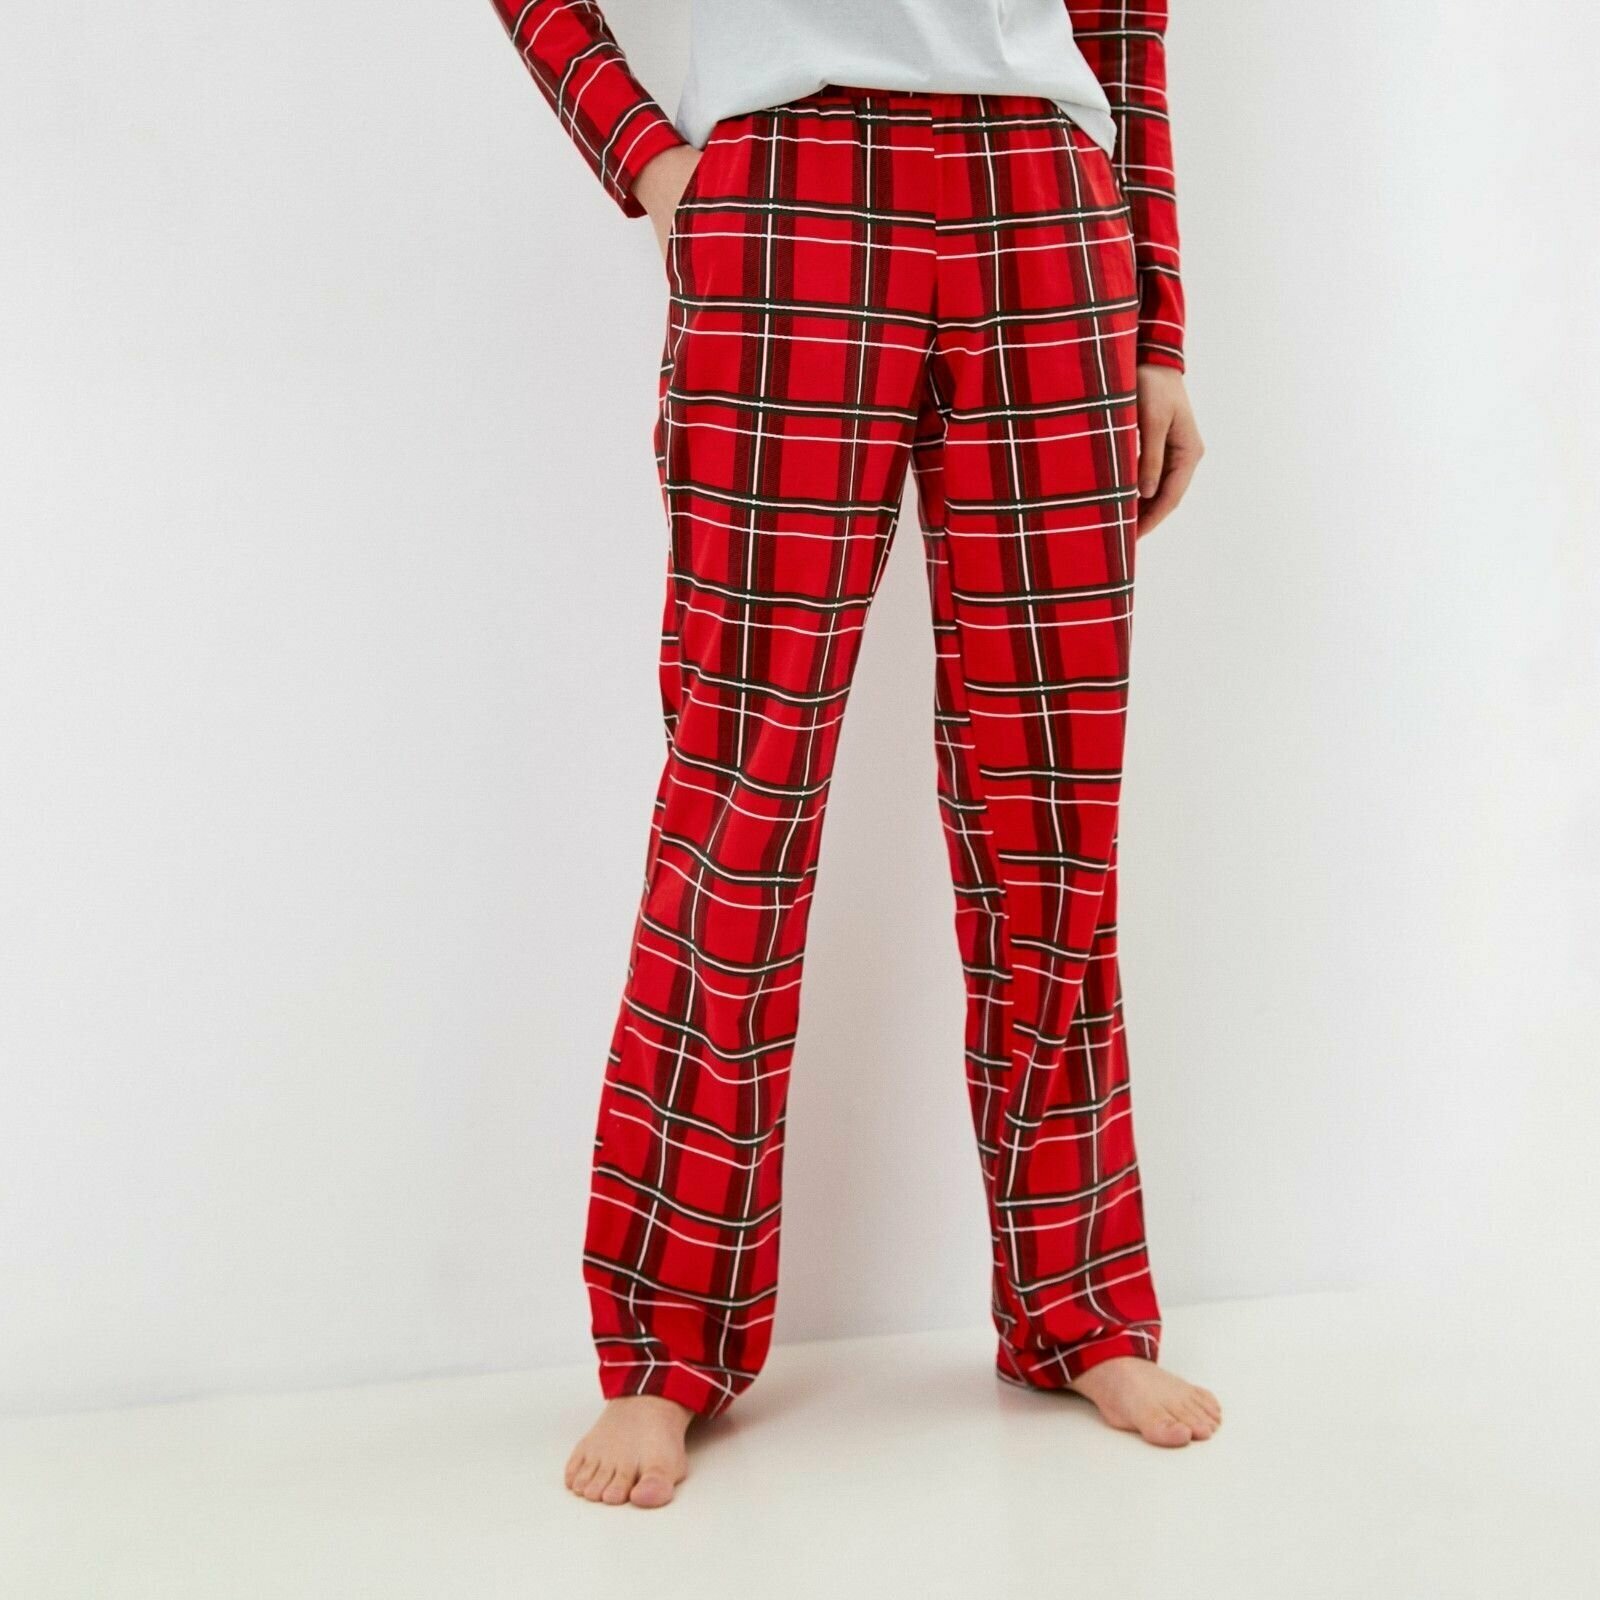 Пижама Kaftan, джемпер, брюки, длинный рукав, карманы, размер 52-54, красный, белый - фотография № 5